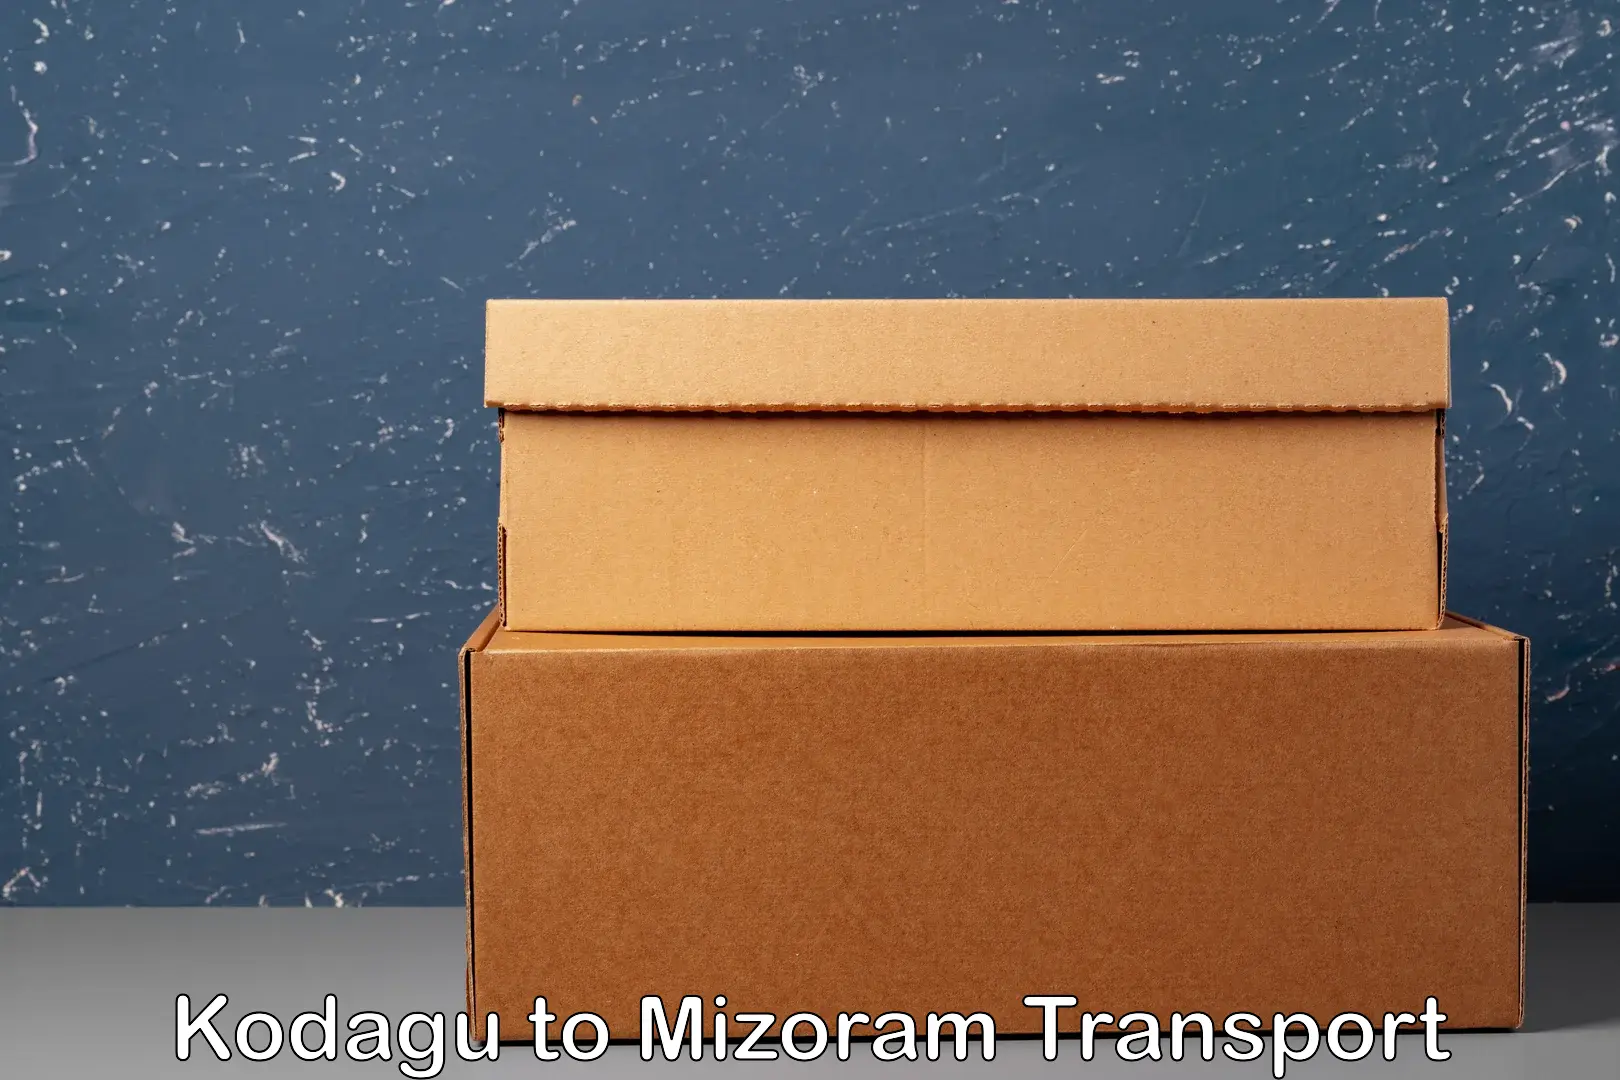 Online transport Kodagu to Mizoram